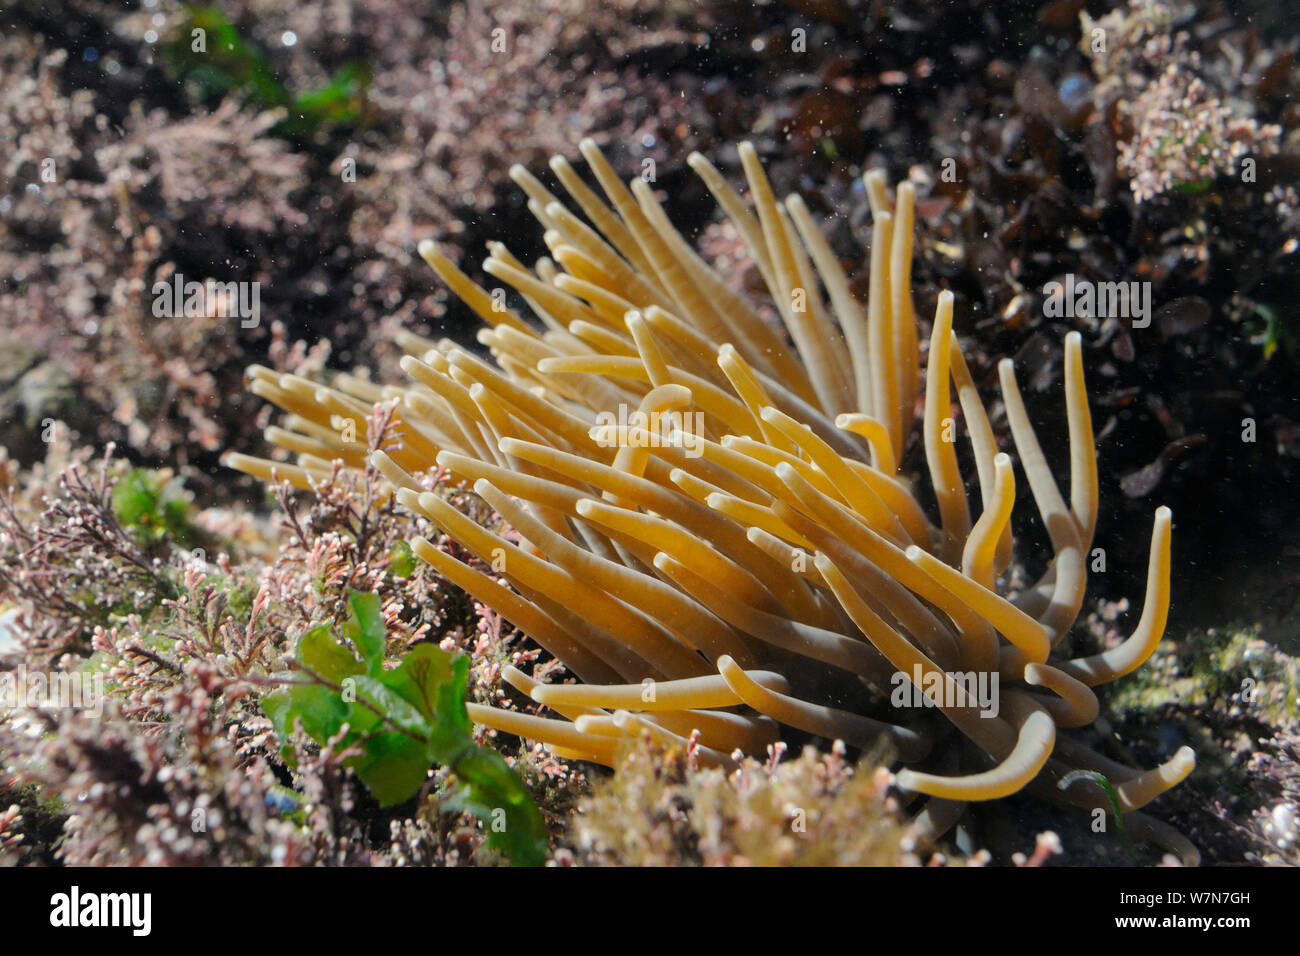 Close up of anémone Anemonia viridis (Snakelocks) parmi les Coralweed (Corallina officinalis) l'alimentation par filtration un rockpool. Rhossili, la péninsule de Gower, juillet. Banque D'Images